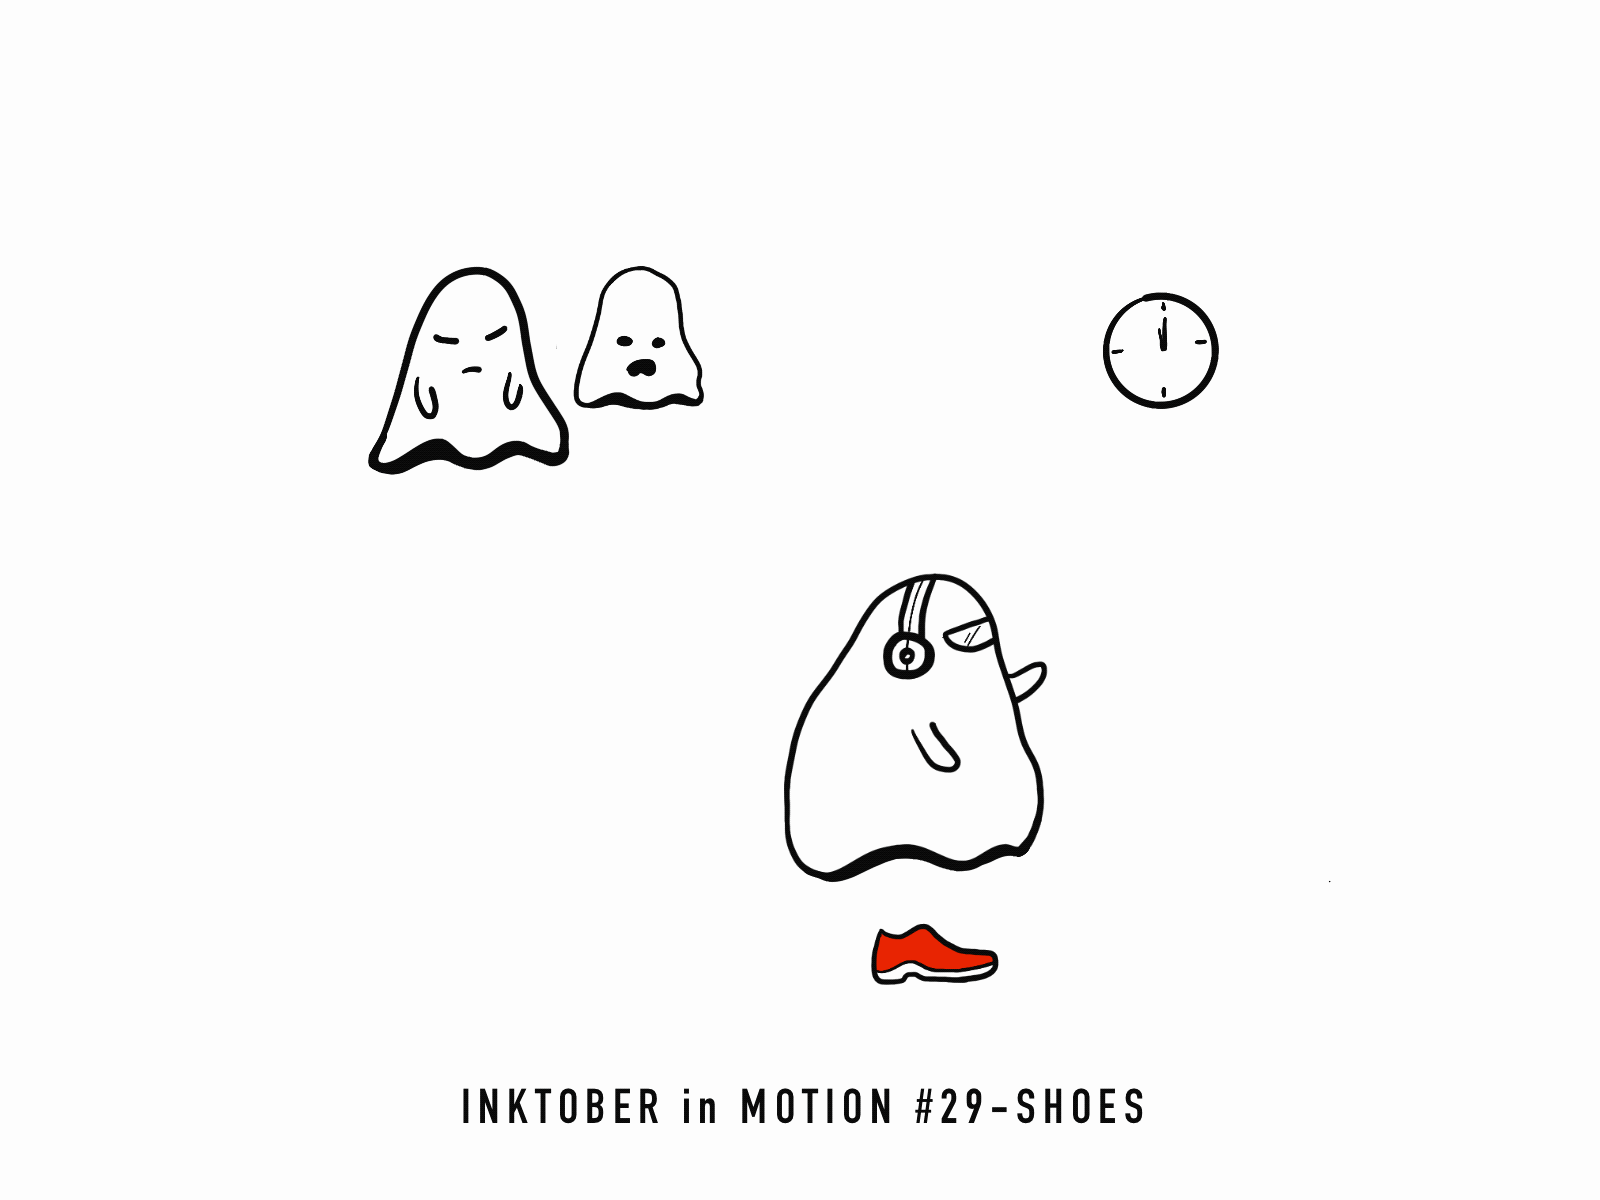 #29 Shoes animation doodle frame animation illustration inktober inktober2020 motion procreate sketch sketching